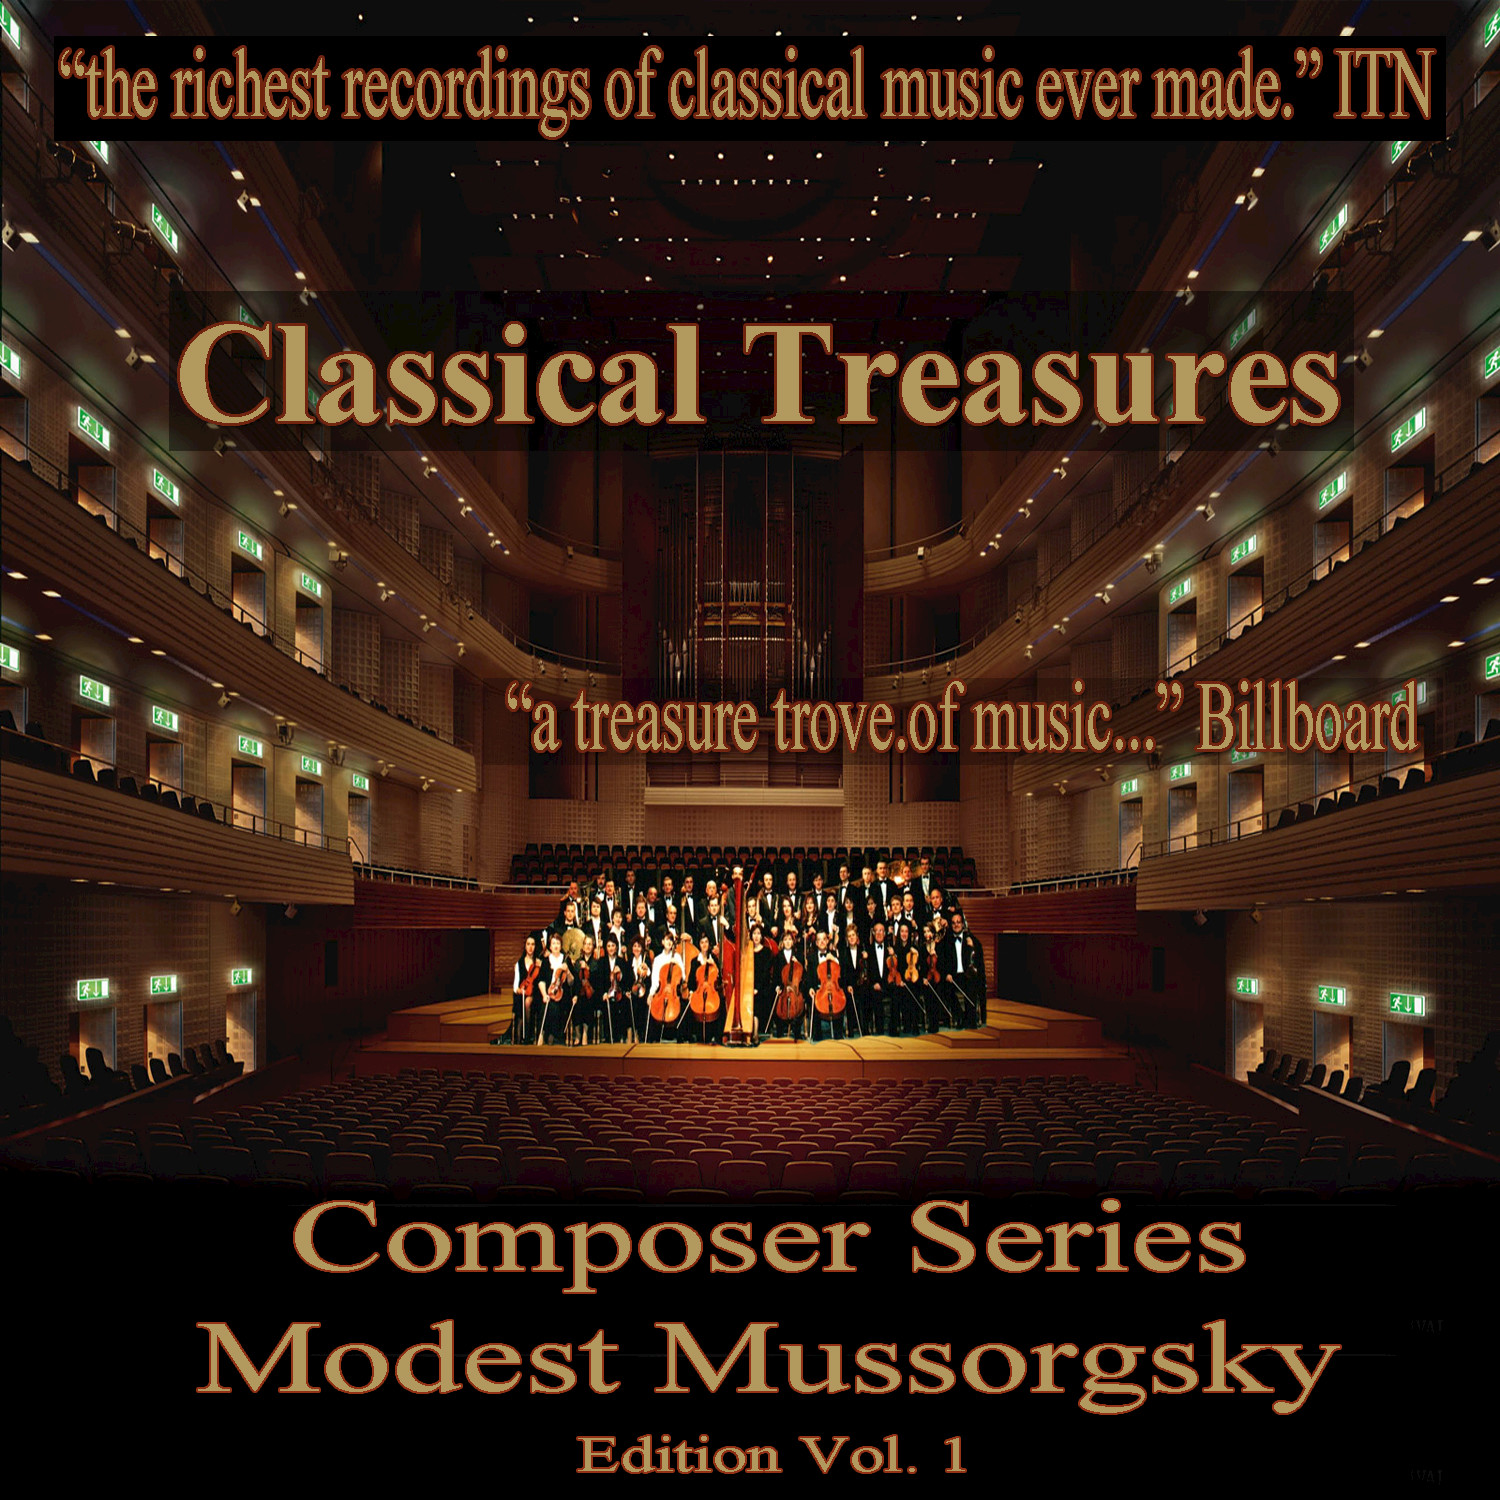 Classical Treasures Composer Series: Modest Mussorgsky, Vol. 1